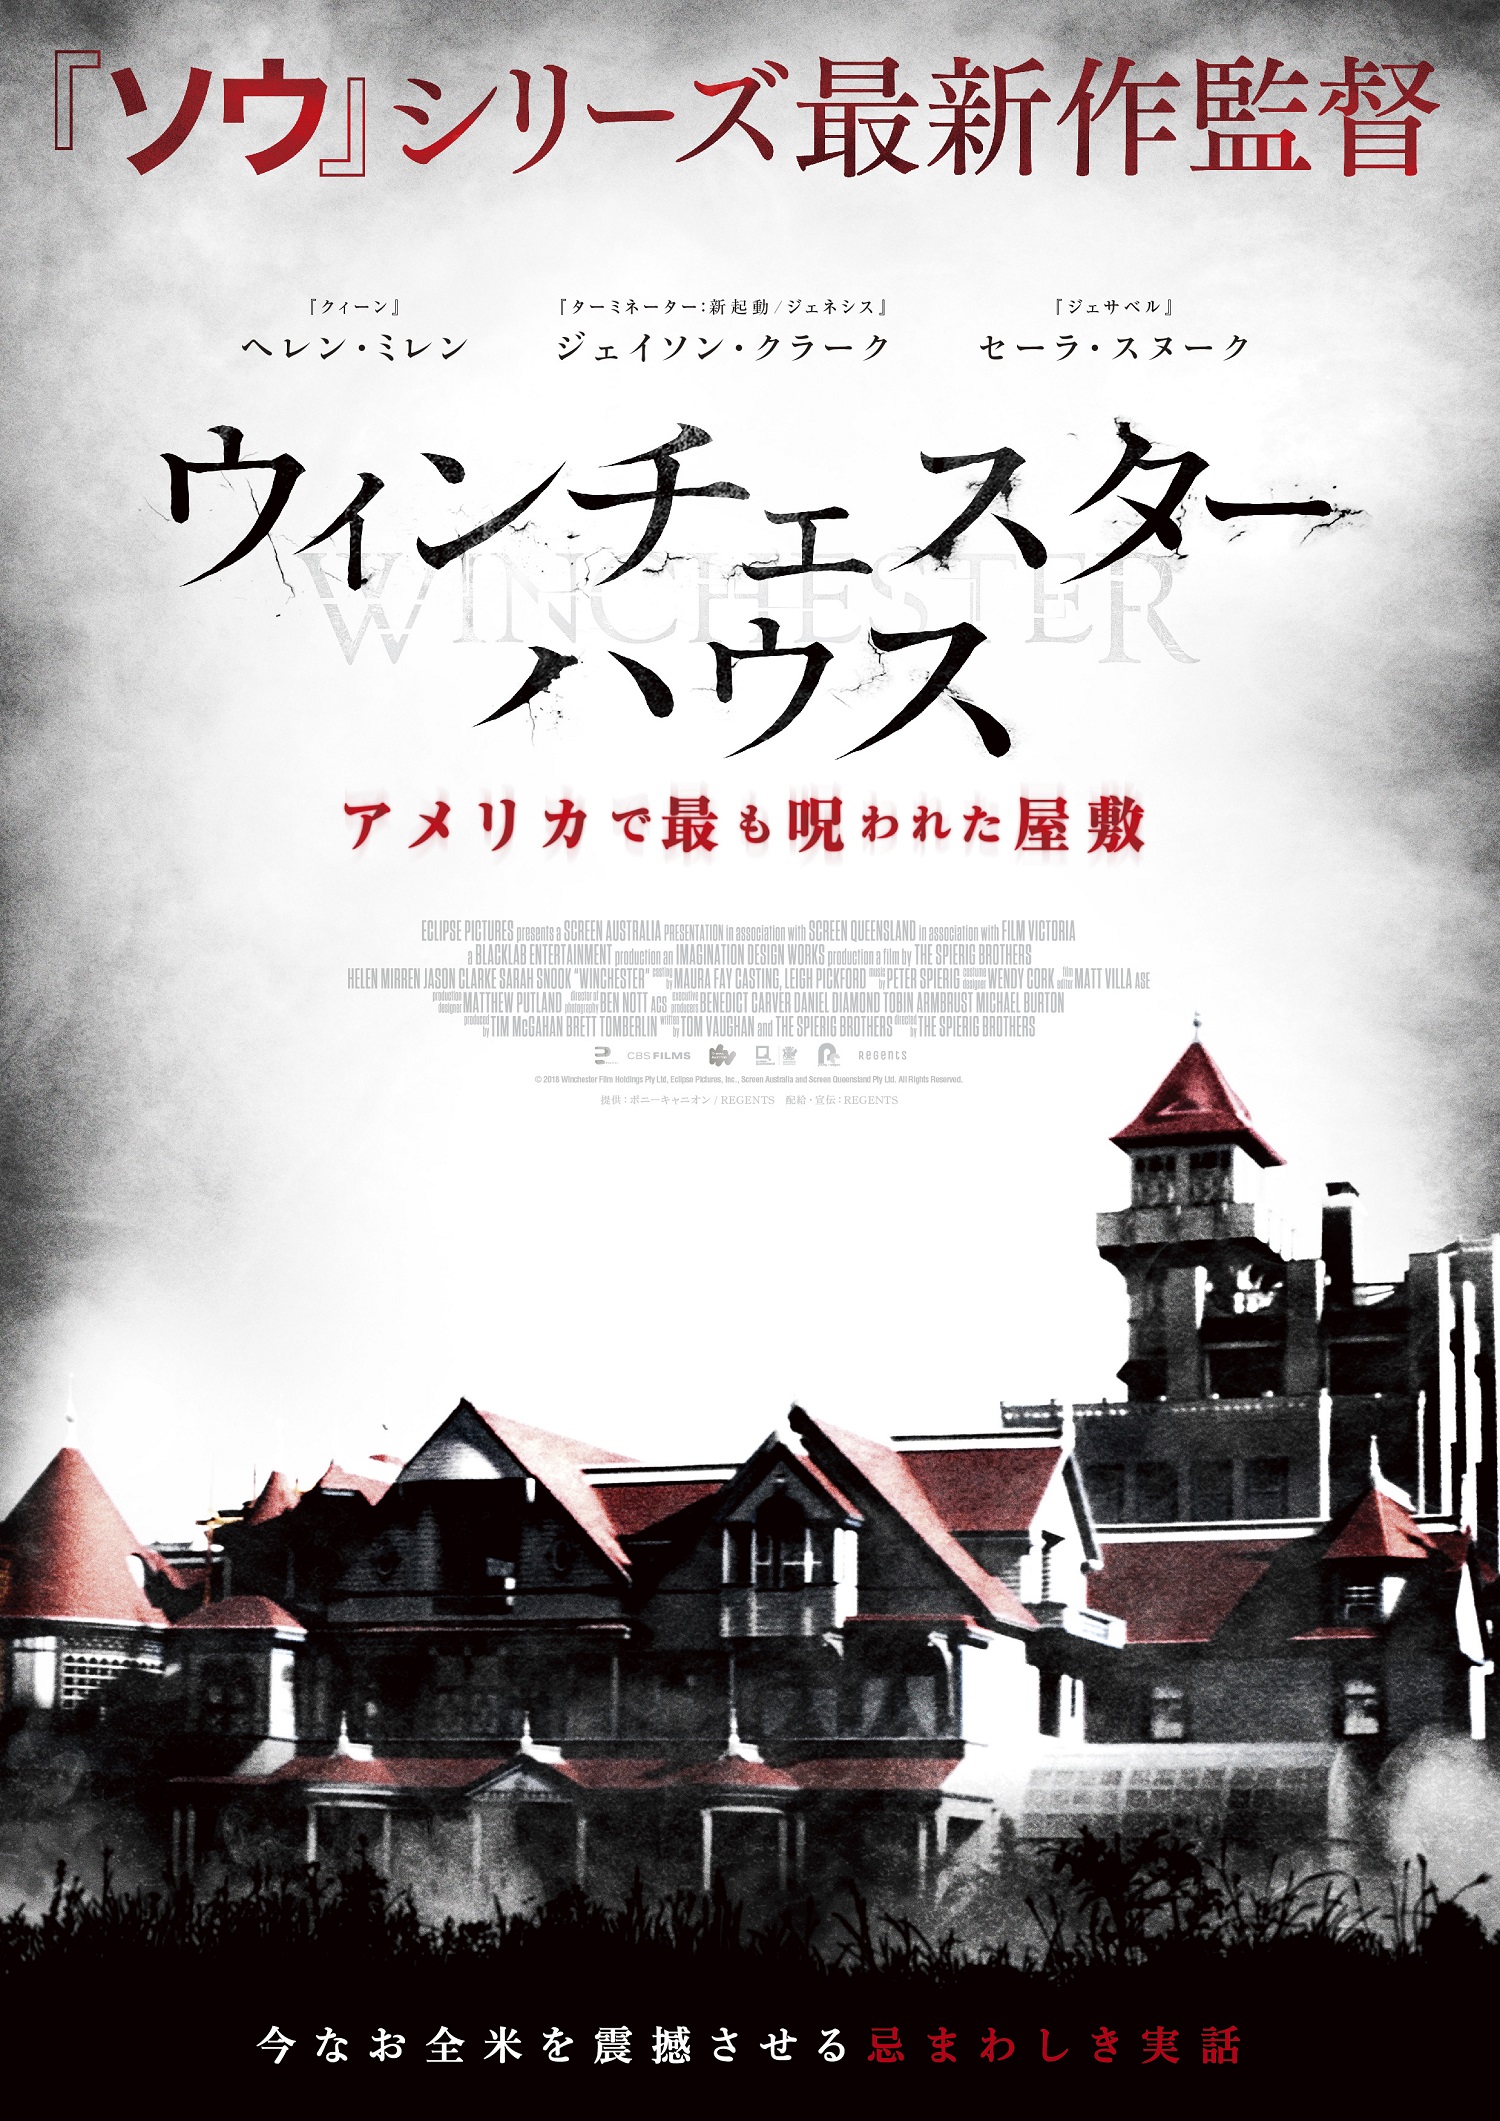 増築し続けなければ死ぬ 実在の幽霊屋敷を描く ウィンチェスターハウス アメリカで最も呪われた屋敷 日本公開 ホラー通信